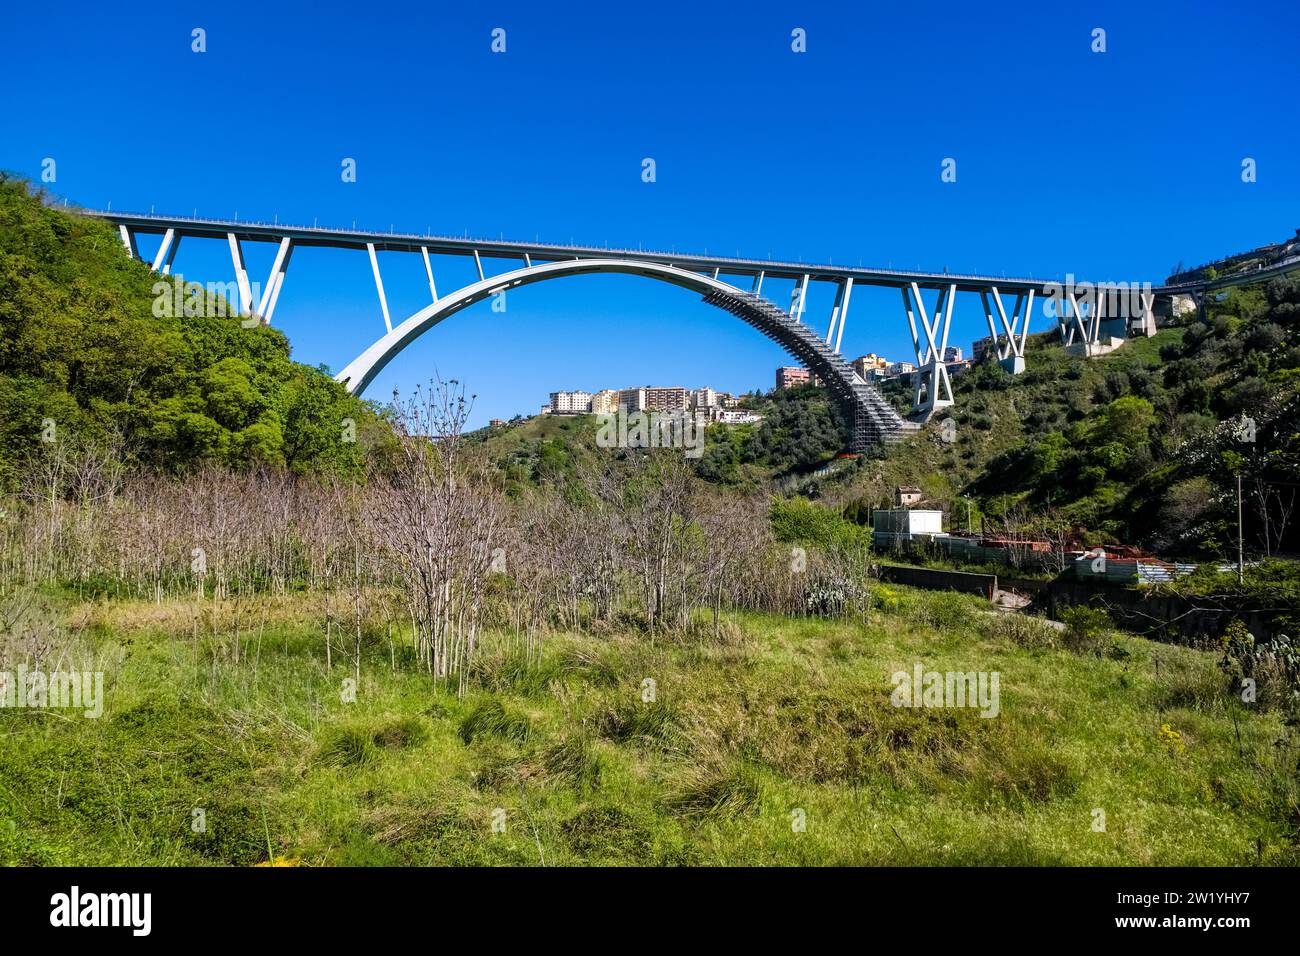 Die Brücke Ponte Bisantis in Catanzaro, erbaut von Riccardo Morandi, ist die größte Bogenbrücke Italiens. Stockfoto